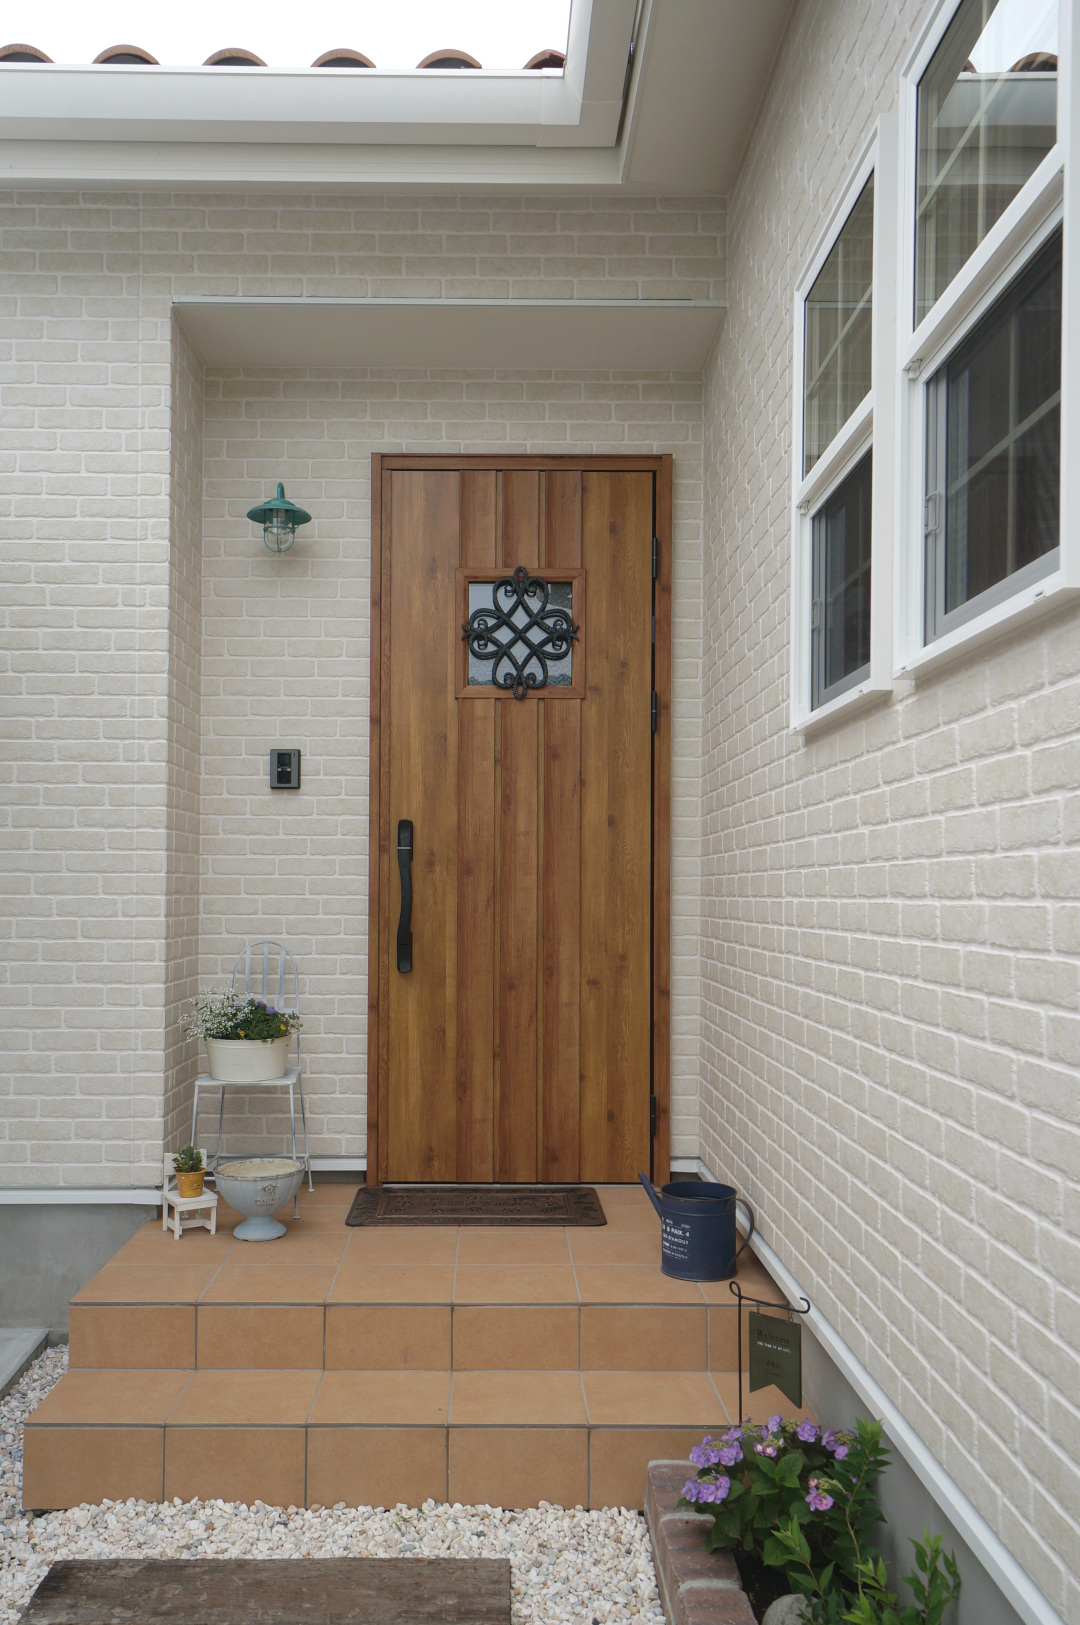 テラコッタ色の玄関タイルとマキアートパインの木目がおしゃれな玄関ドア♩